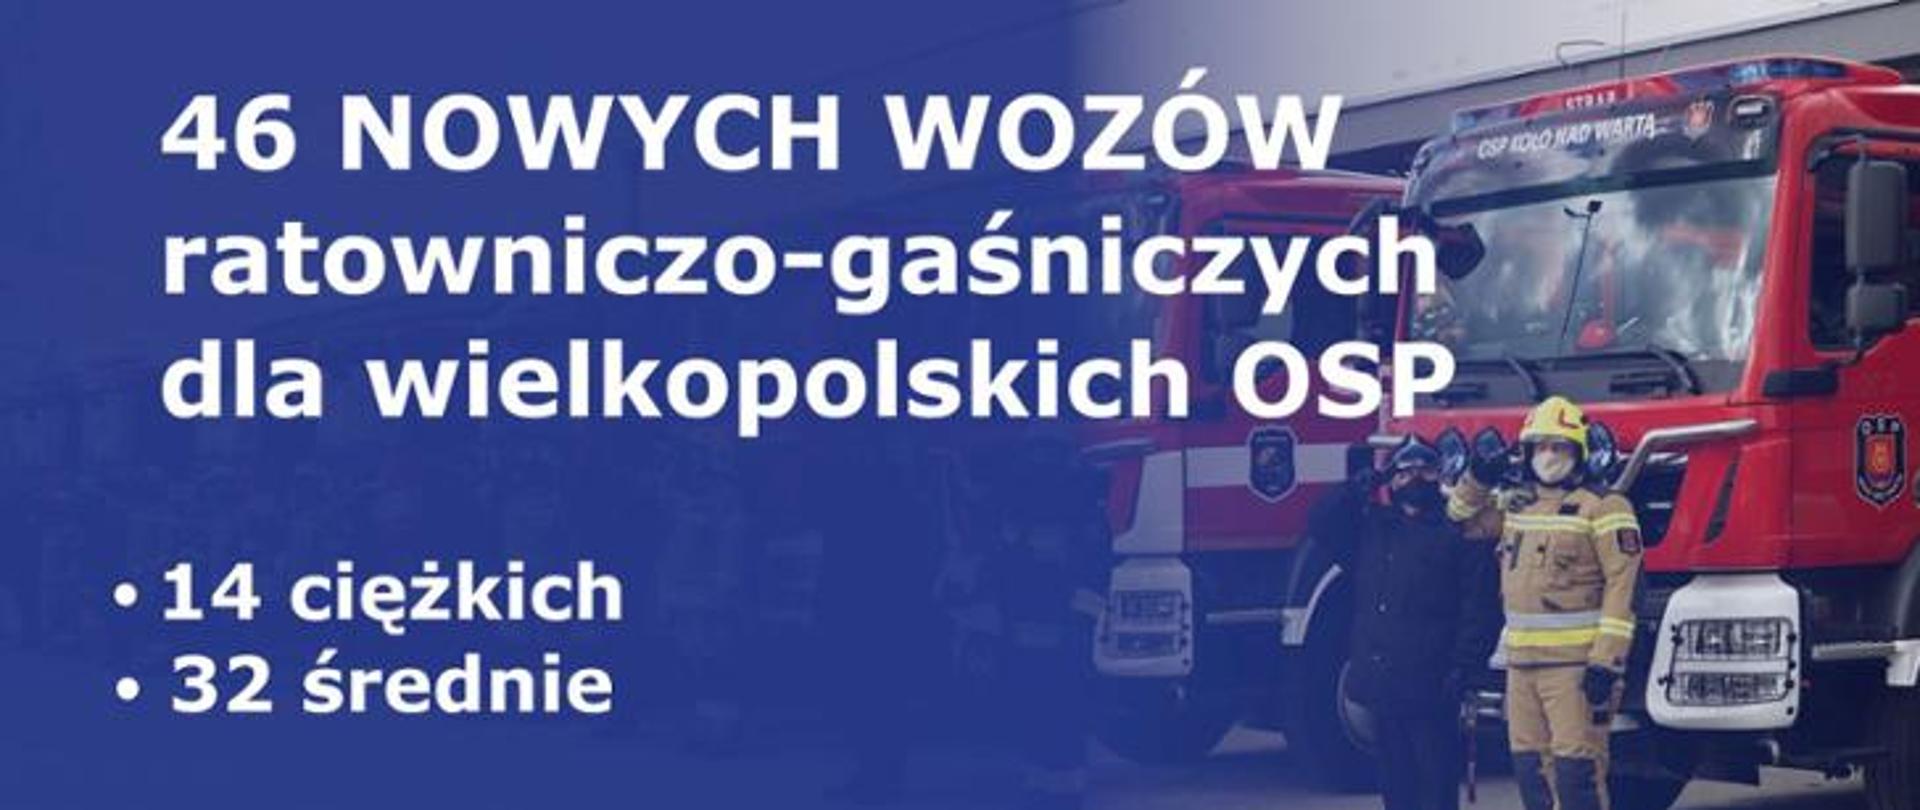 na niebieskim tle napis: 46 nowych wozów ratowniczo - gaśniczych dla wielkopolskich osp 14 ciężkich 32 średnie, w tle przed samochodami strażackimi stoją salutujący strażacy